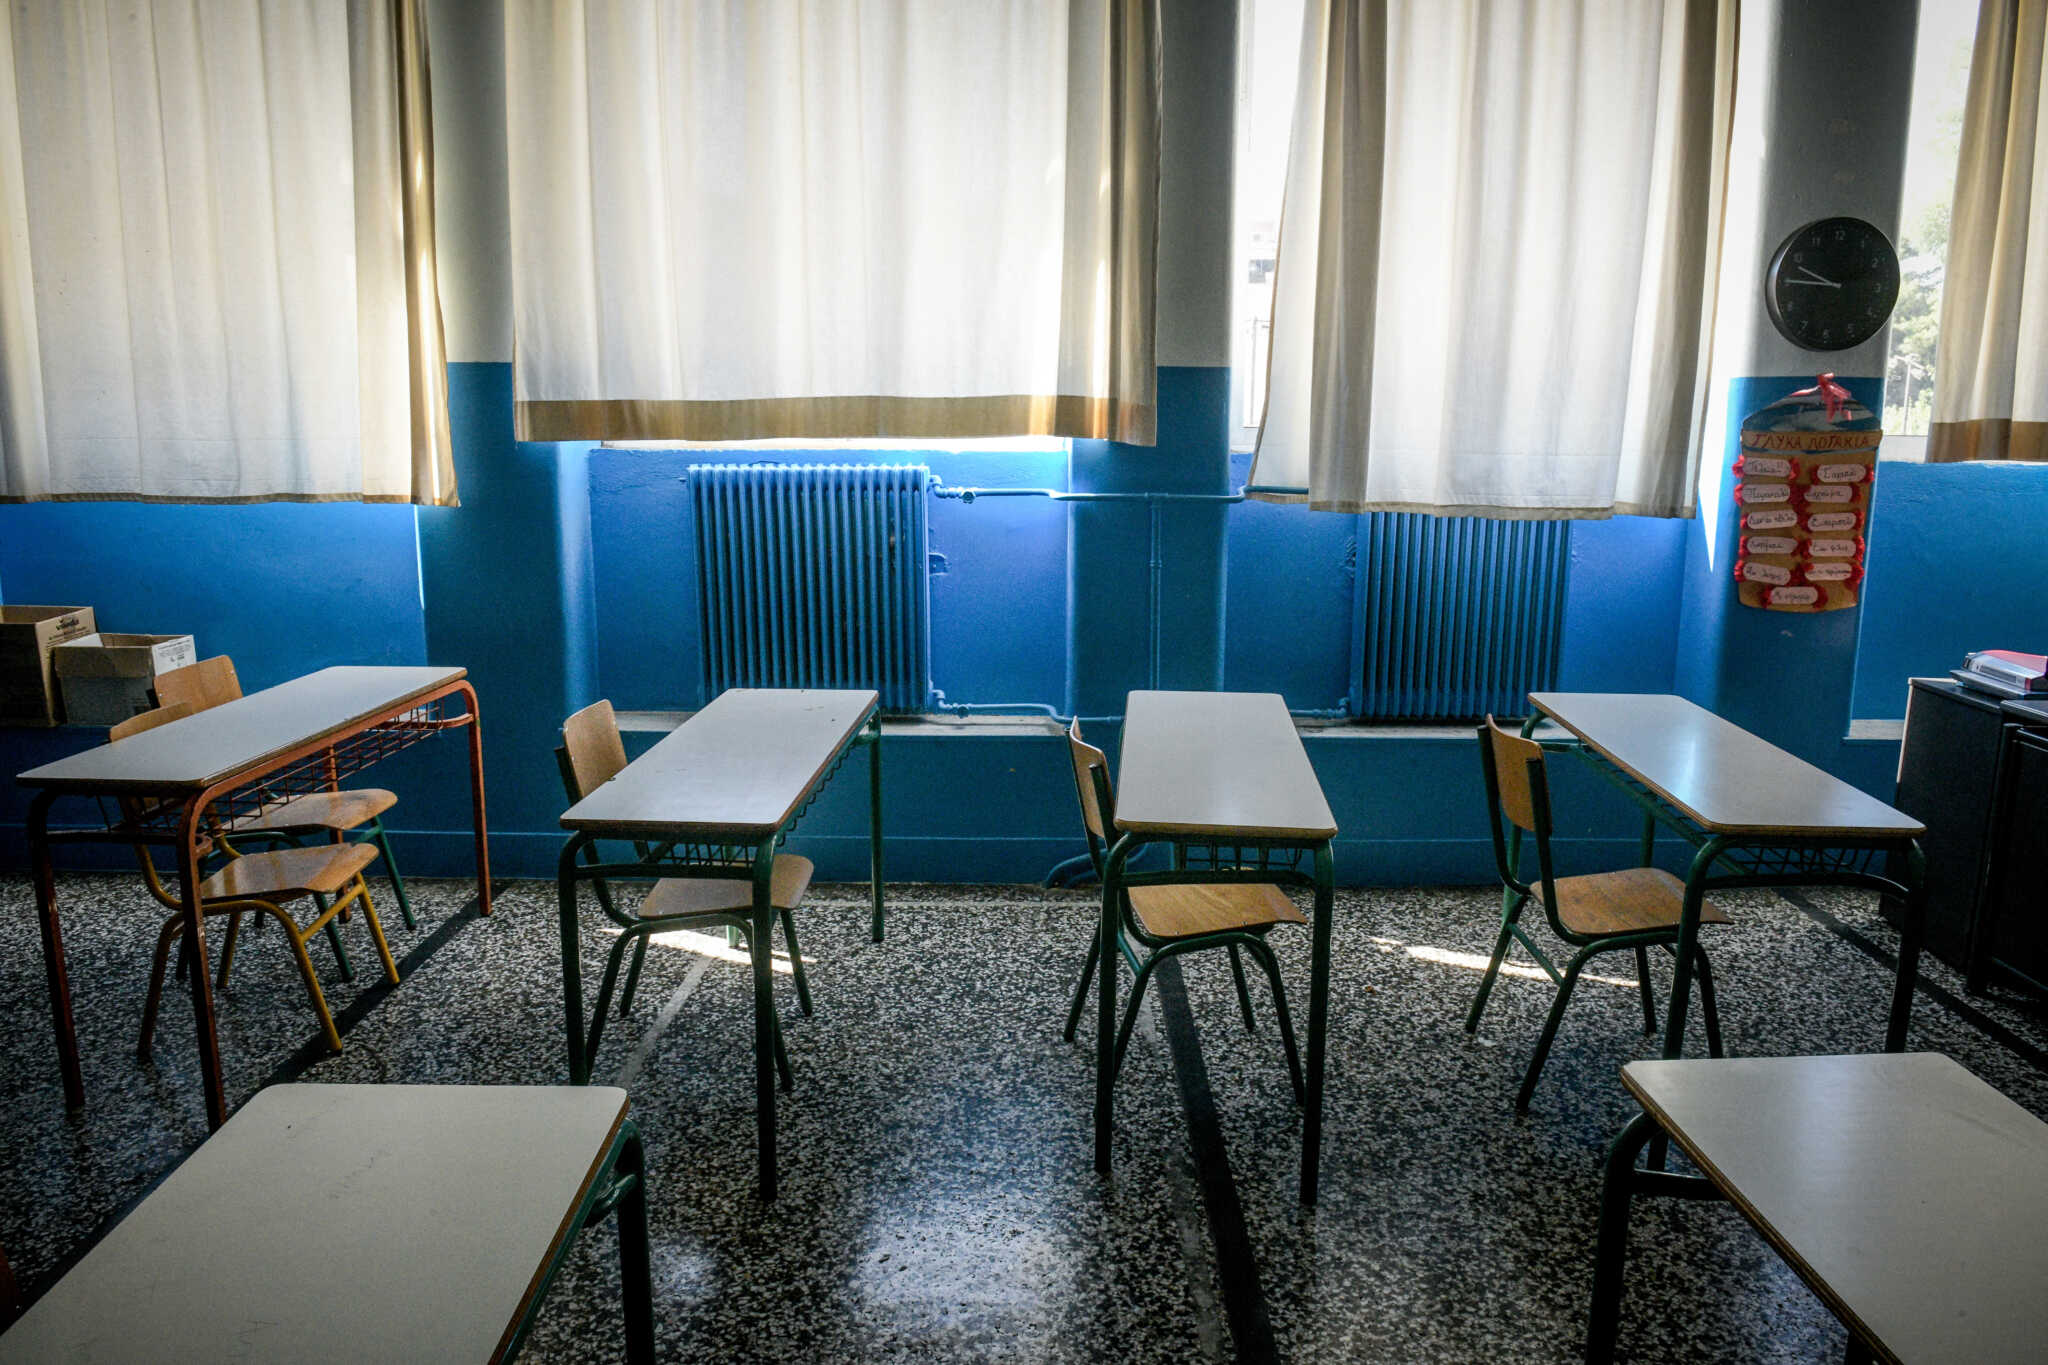 Ηράκλειο: Στικάκια νικοτίνης προκάλεσαν την λιποθυμία των μαθητών του γυμνασίου Αλικαρνασσού